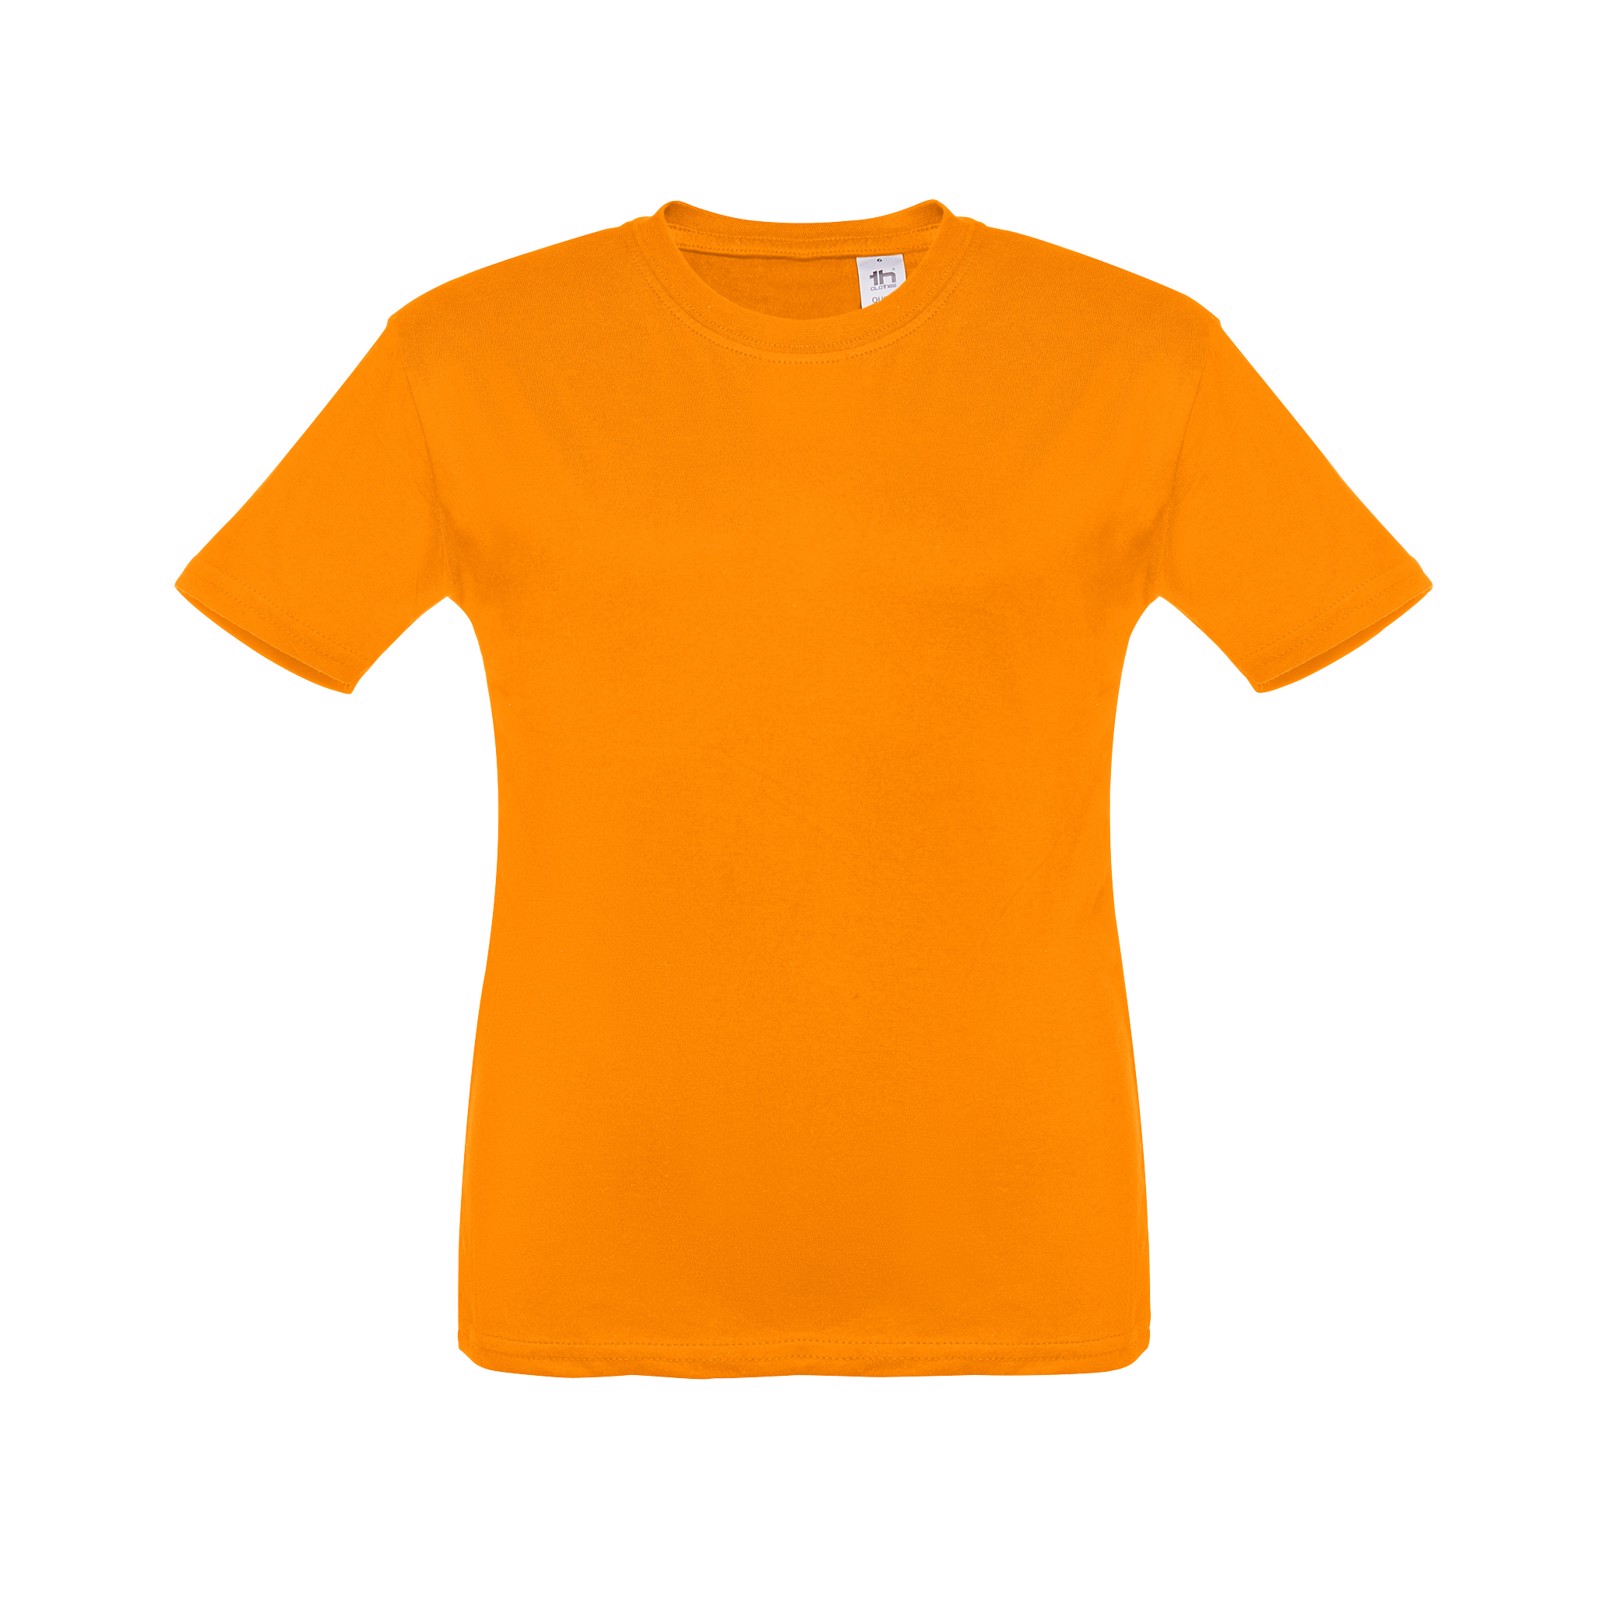 THC ANKARA KIDS. Children's t-shirt - Orange / 8